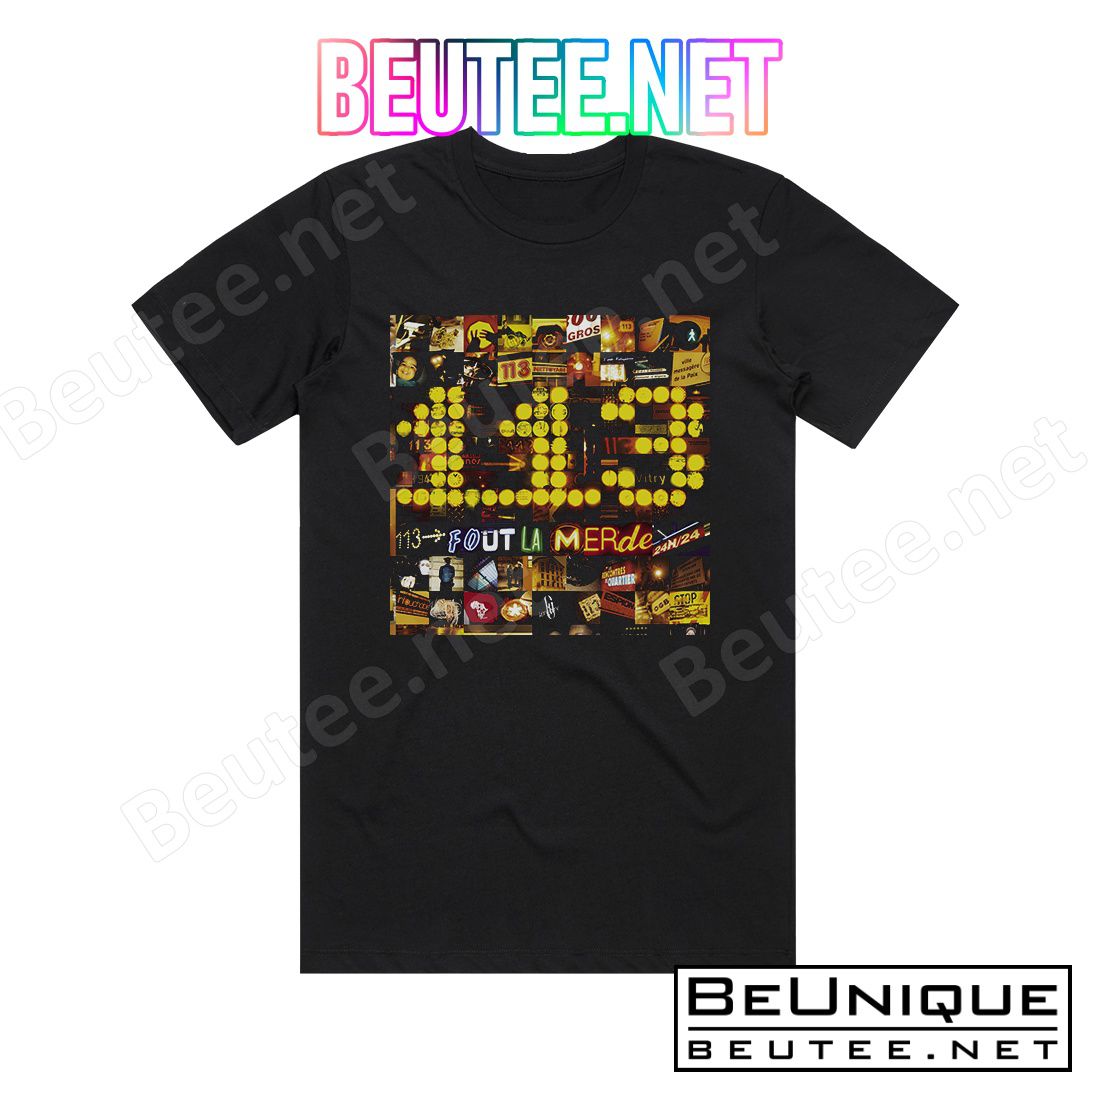 113 113 Fout La Merde Album Cover T-Shirt